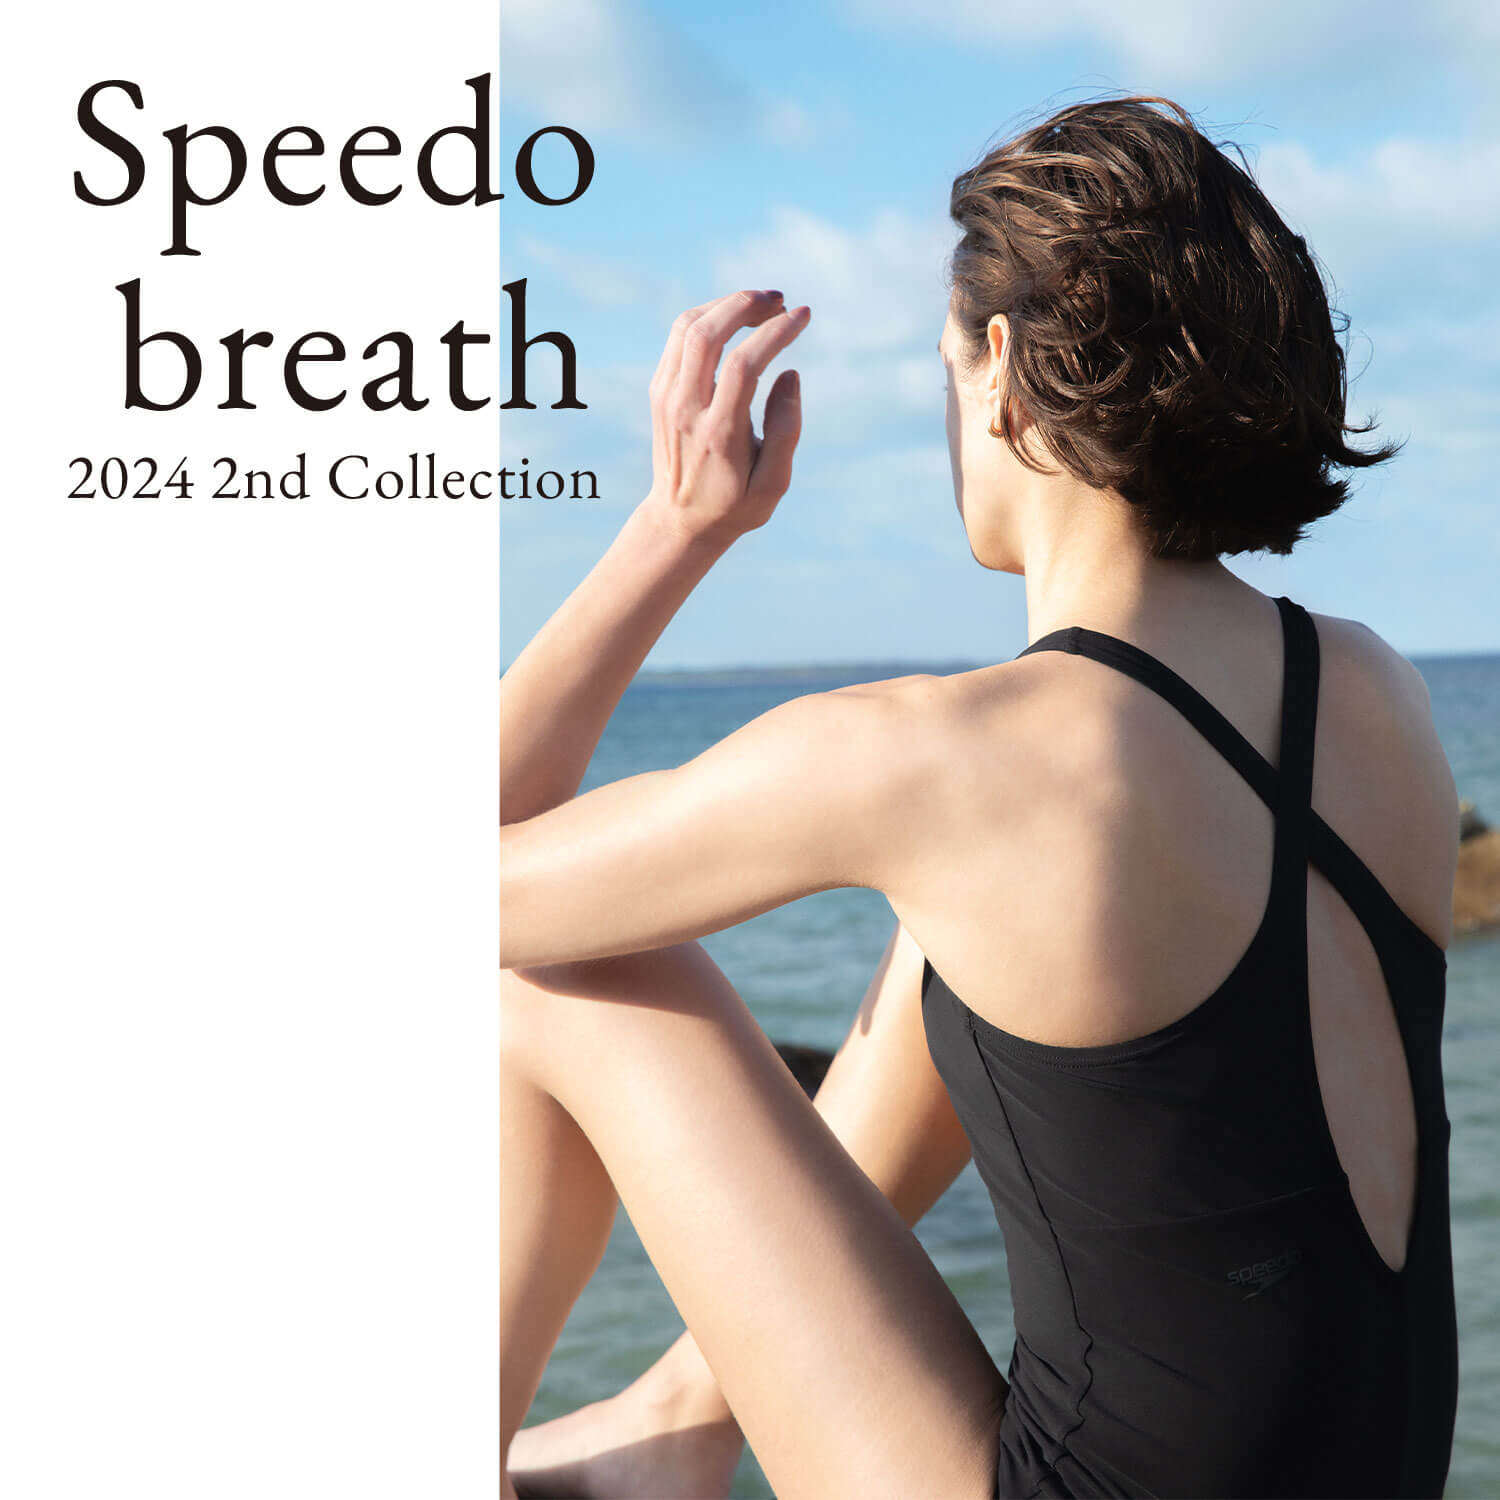 Speedo breath 2024 1st collection